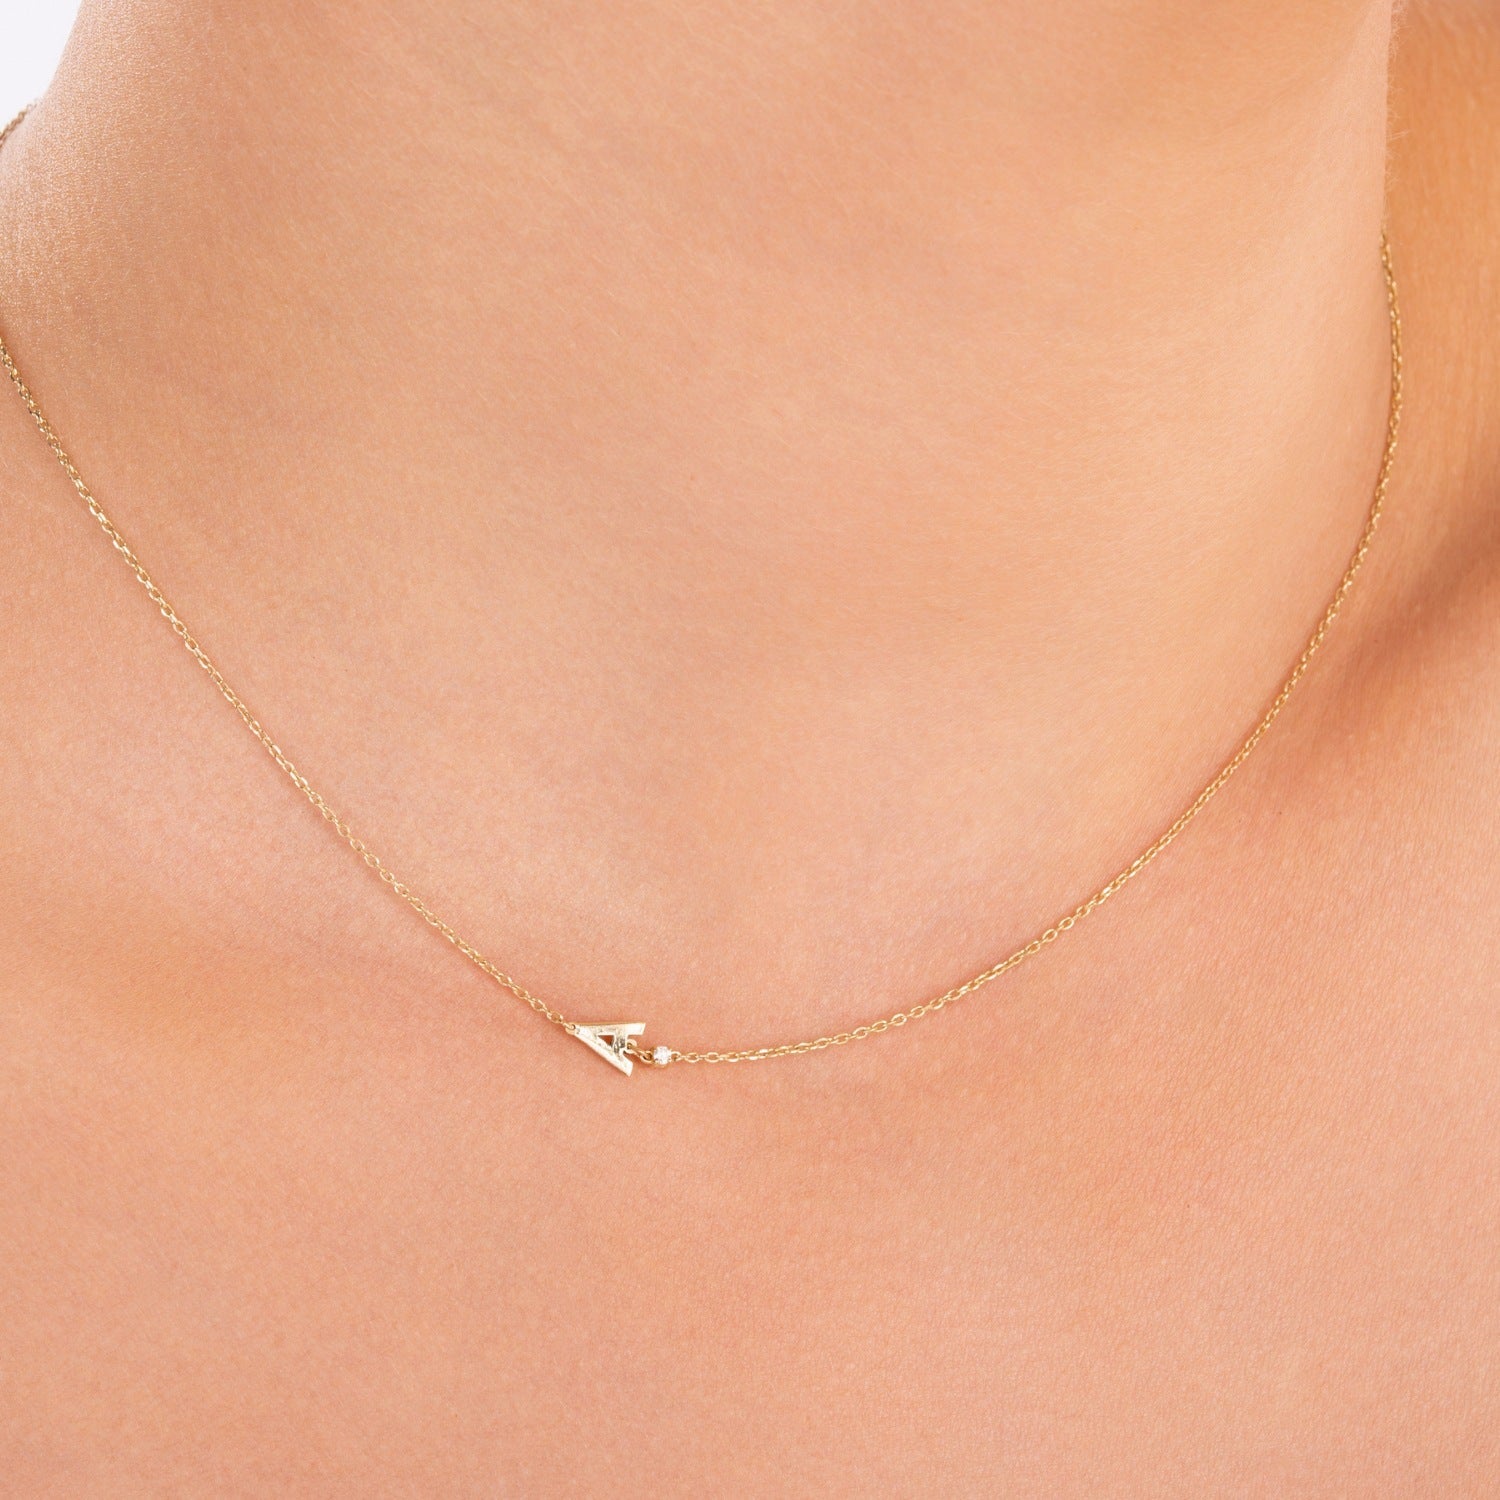 Sideways Initial J Necklace with Diamond